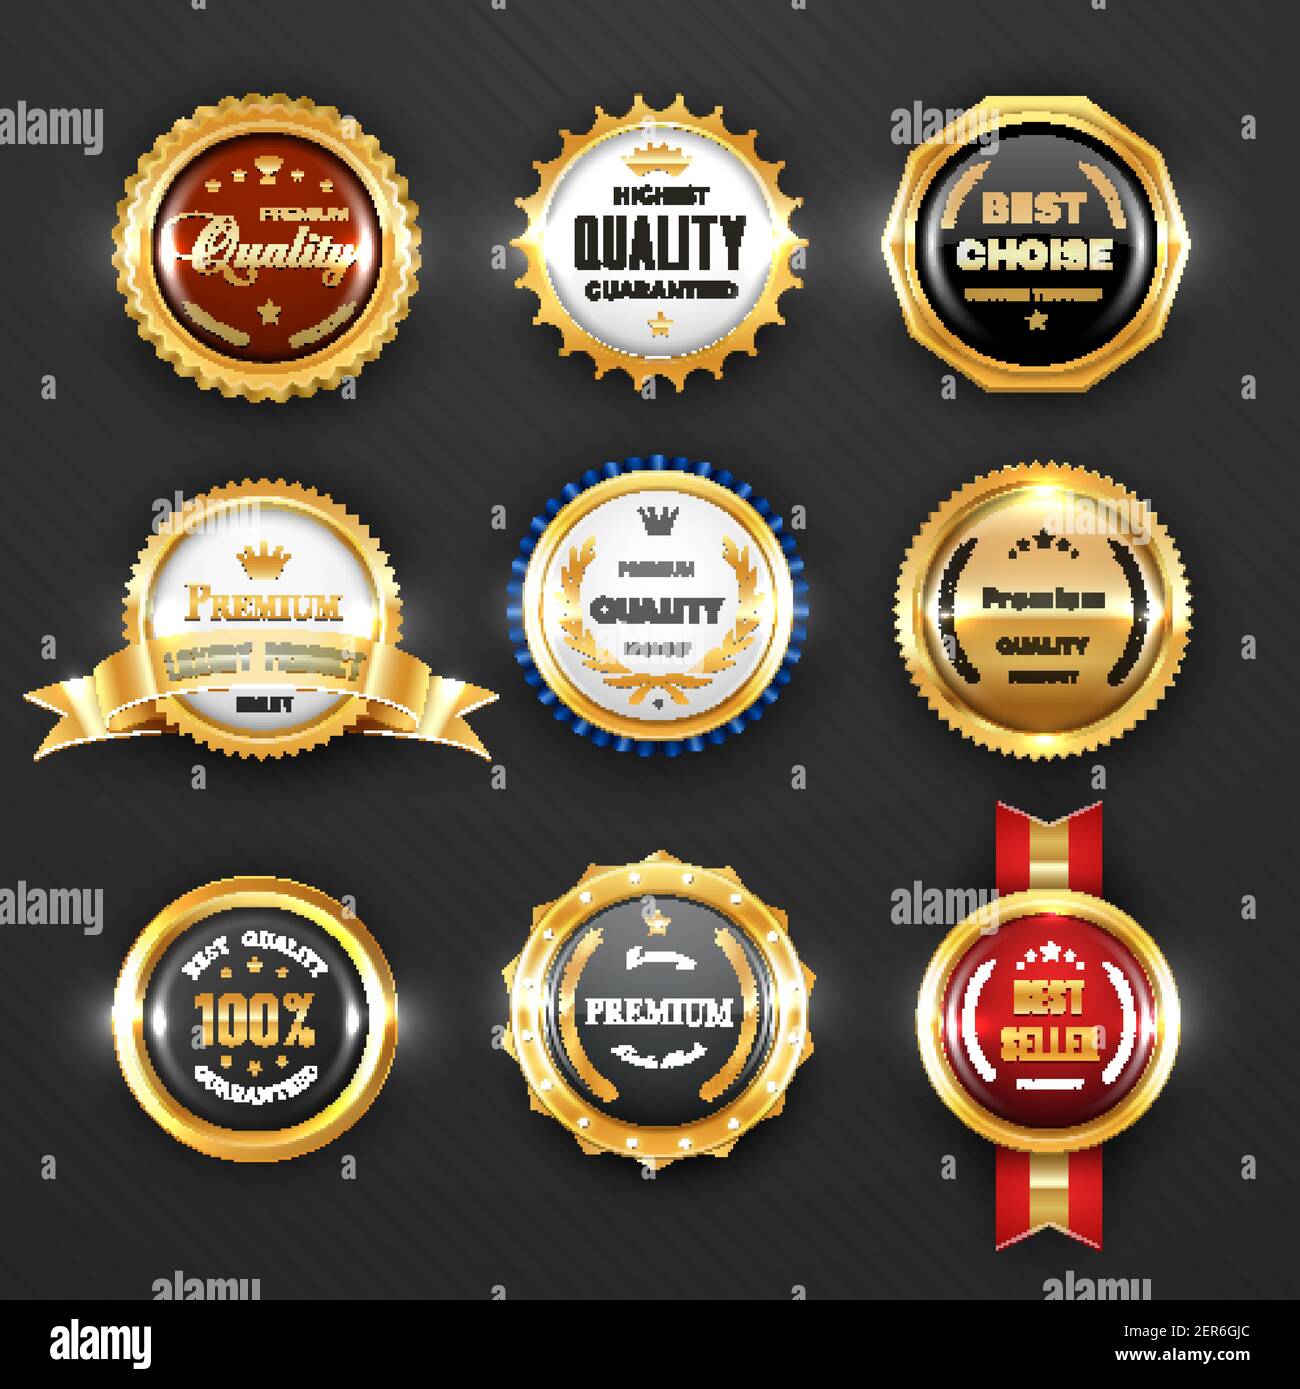 Premium Vector  Best choice gold vector emblem, best choice label